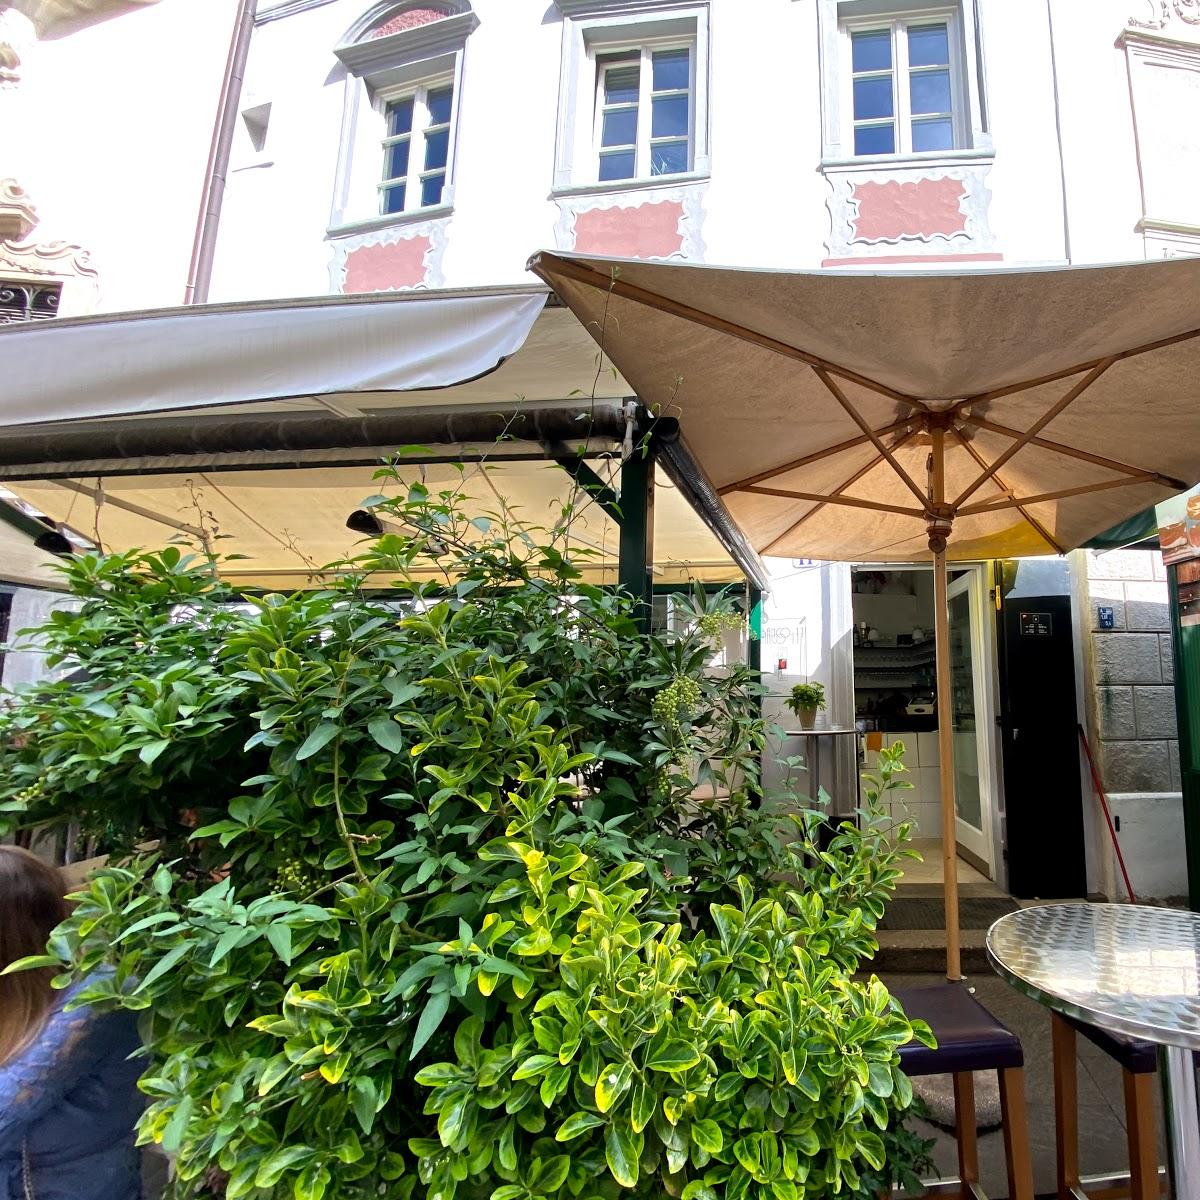 Restaurant "Banco 11" in Bozen